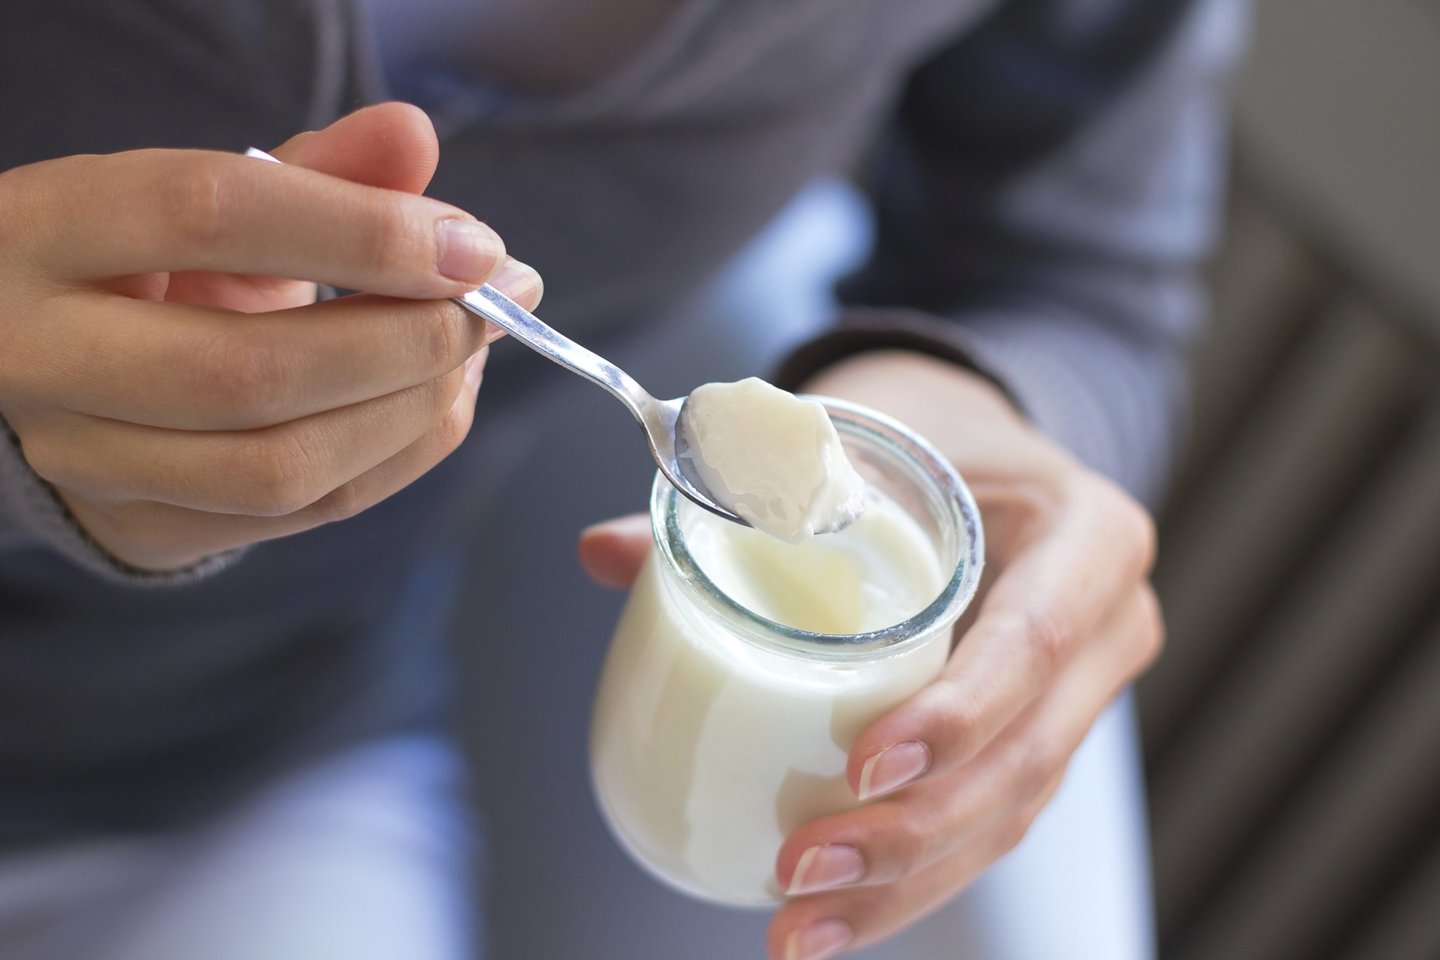 Обезжиренный творог и другие молочные продукты: как выбрать самые полезные рис-2